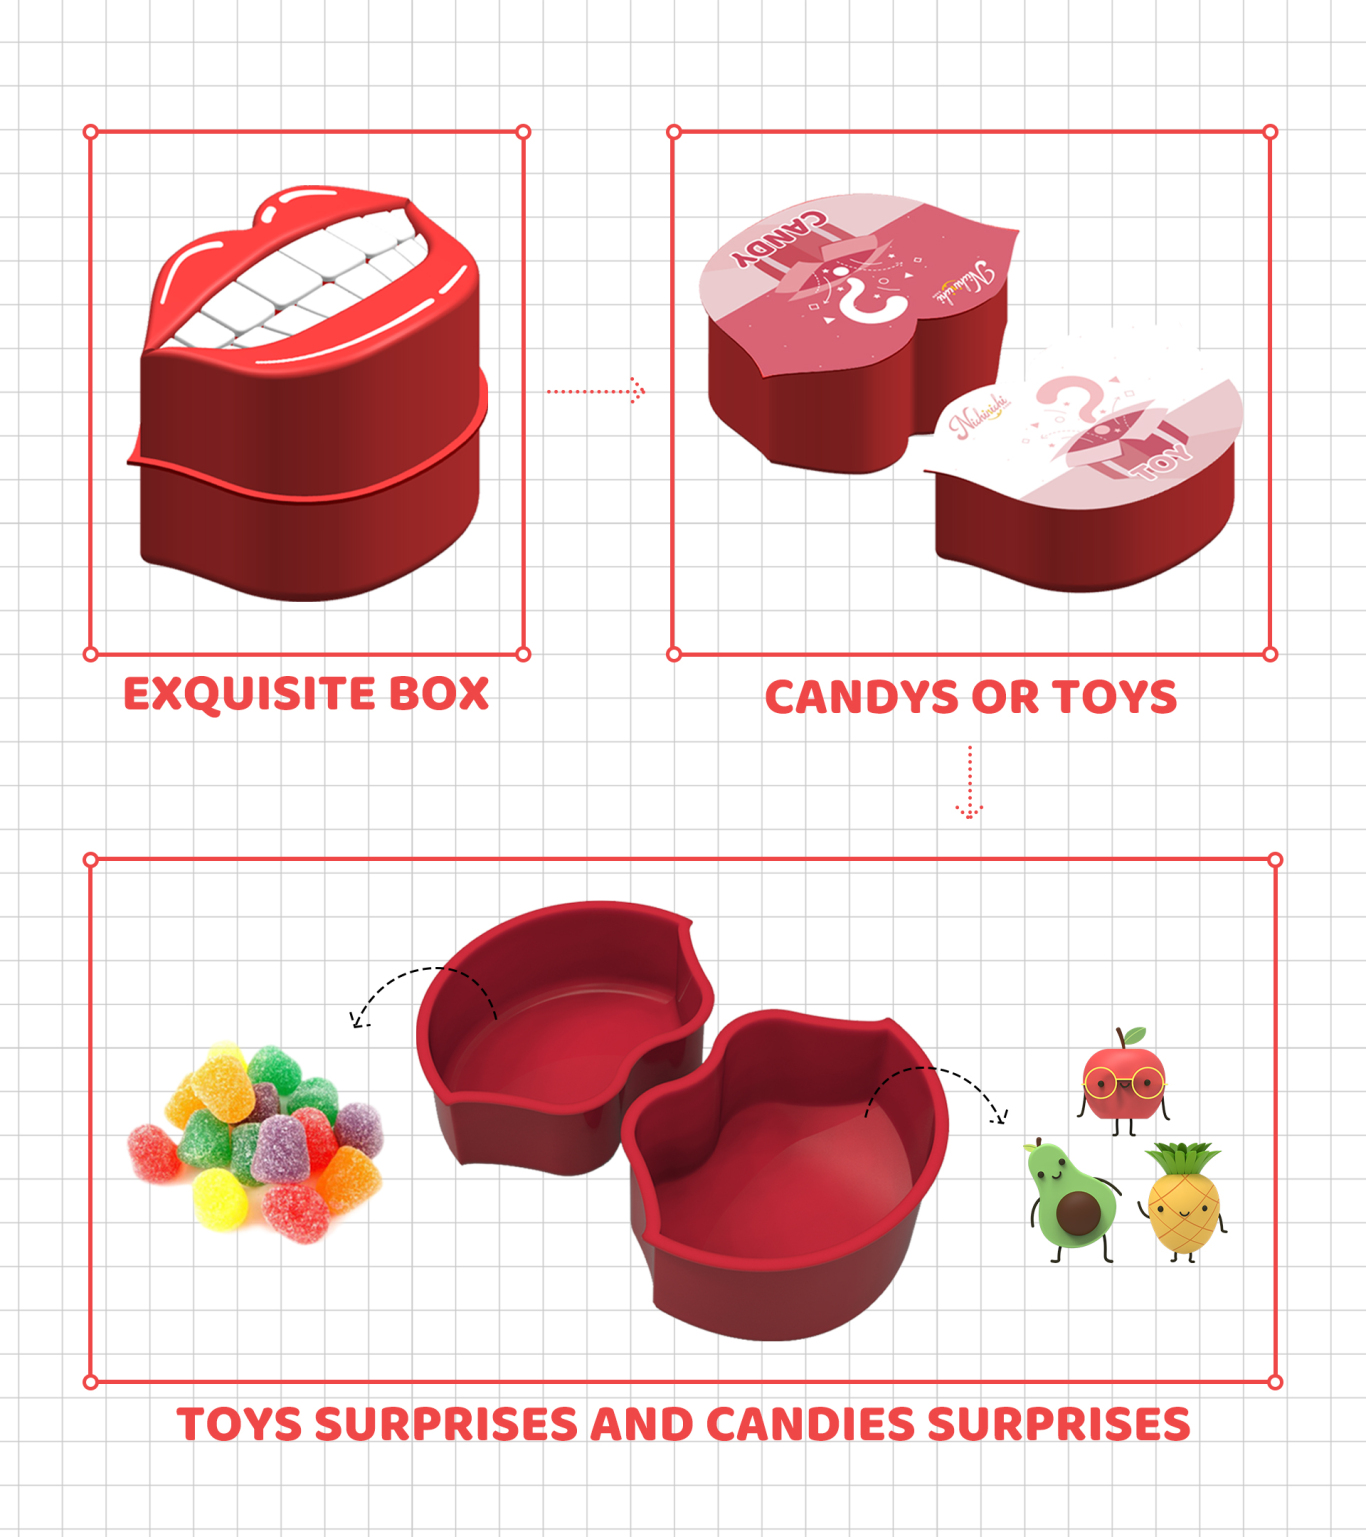 糖盒包裝設計 禮品設計 食品包裝 創意包裝 卡通玩具圖1